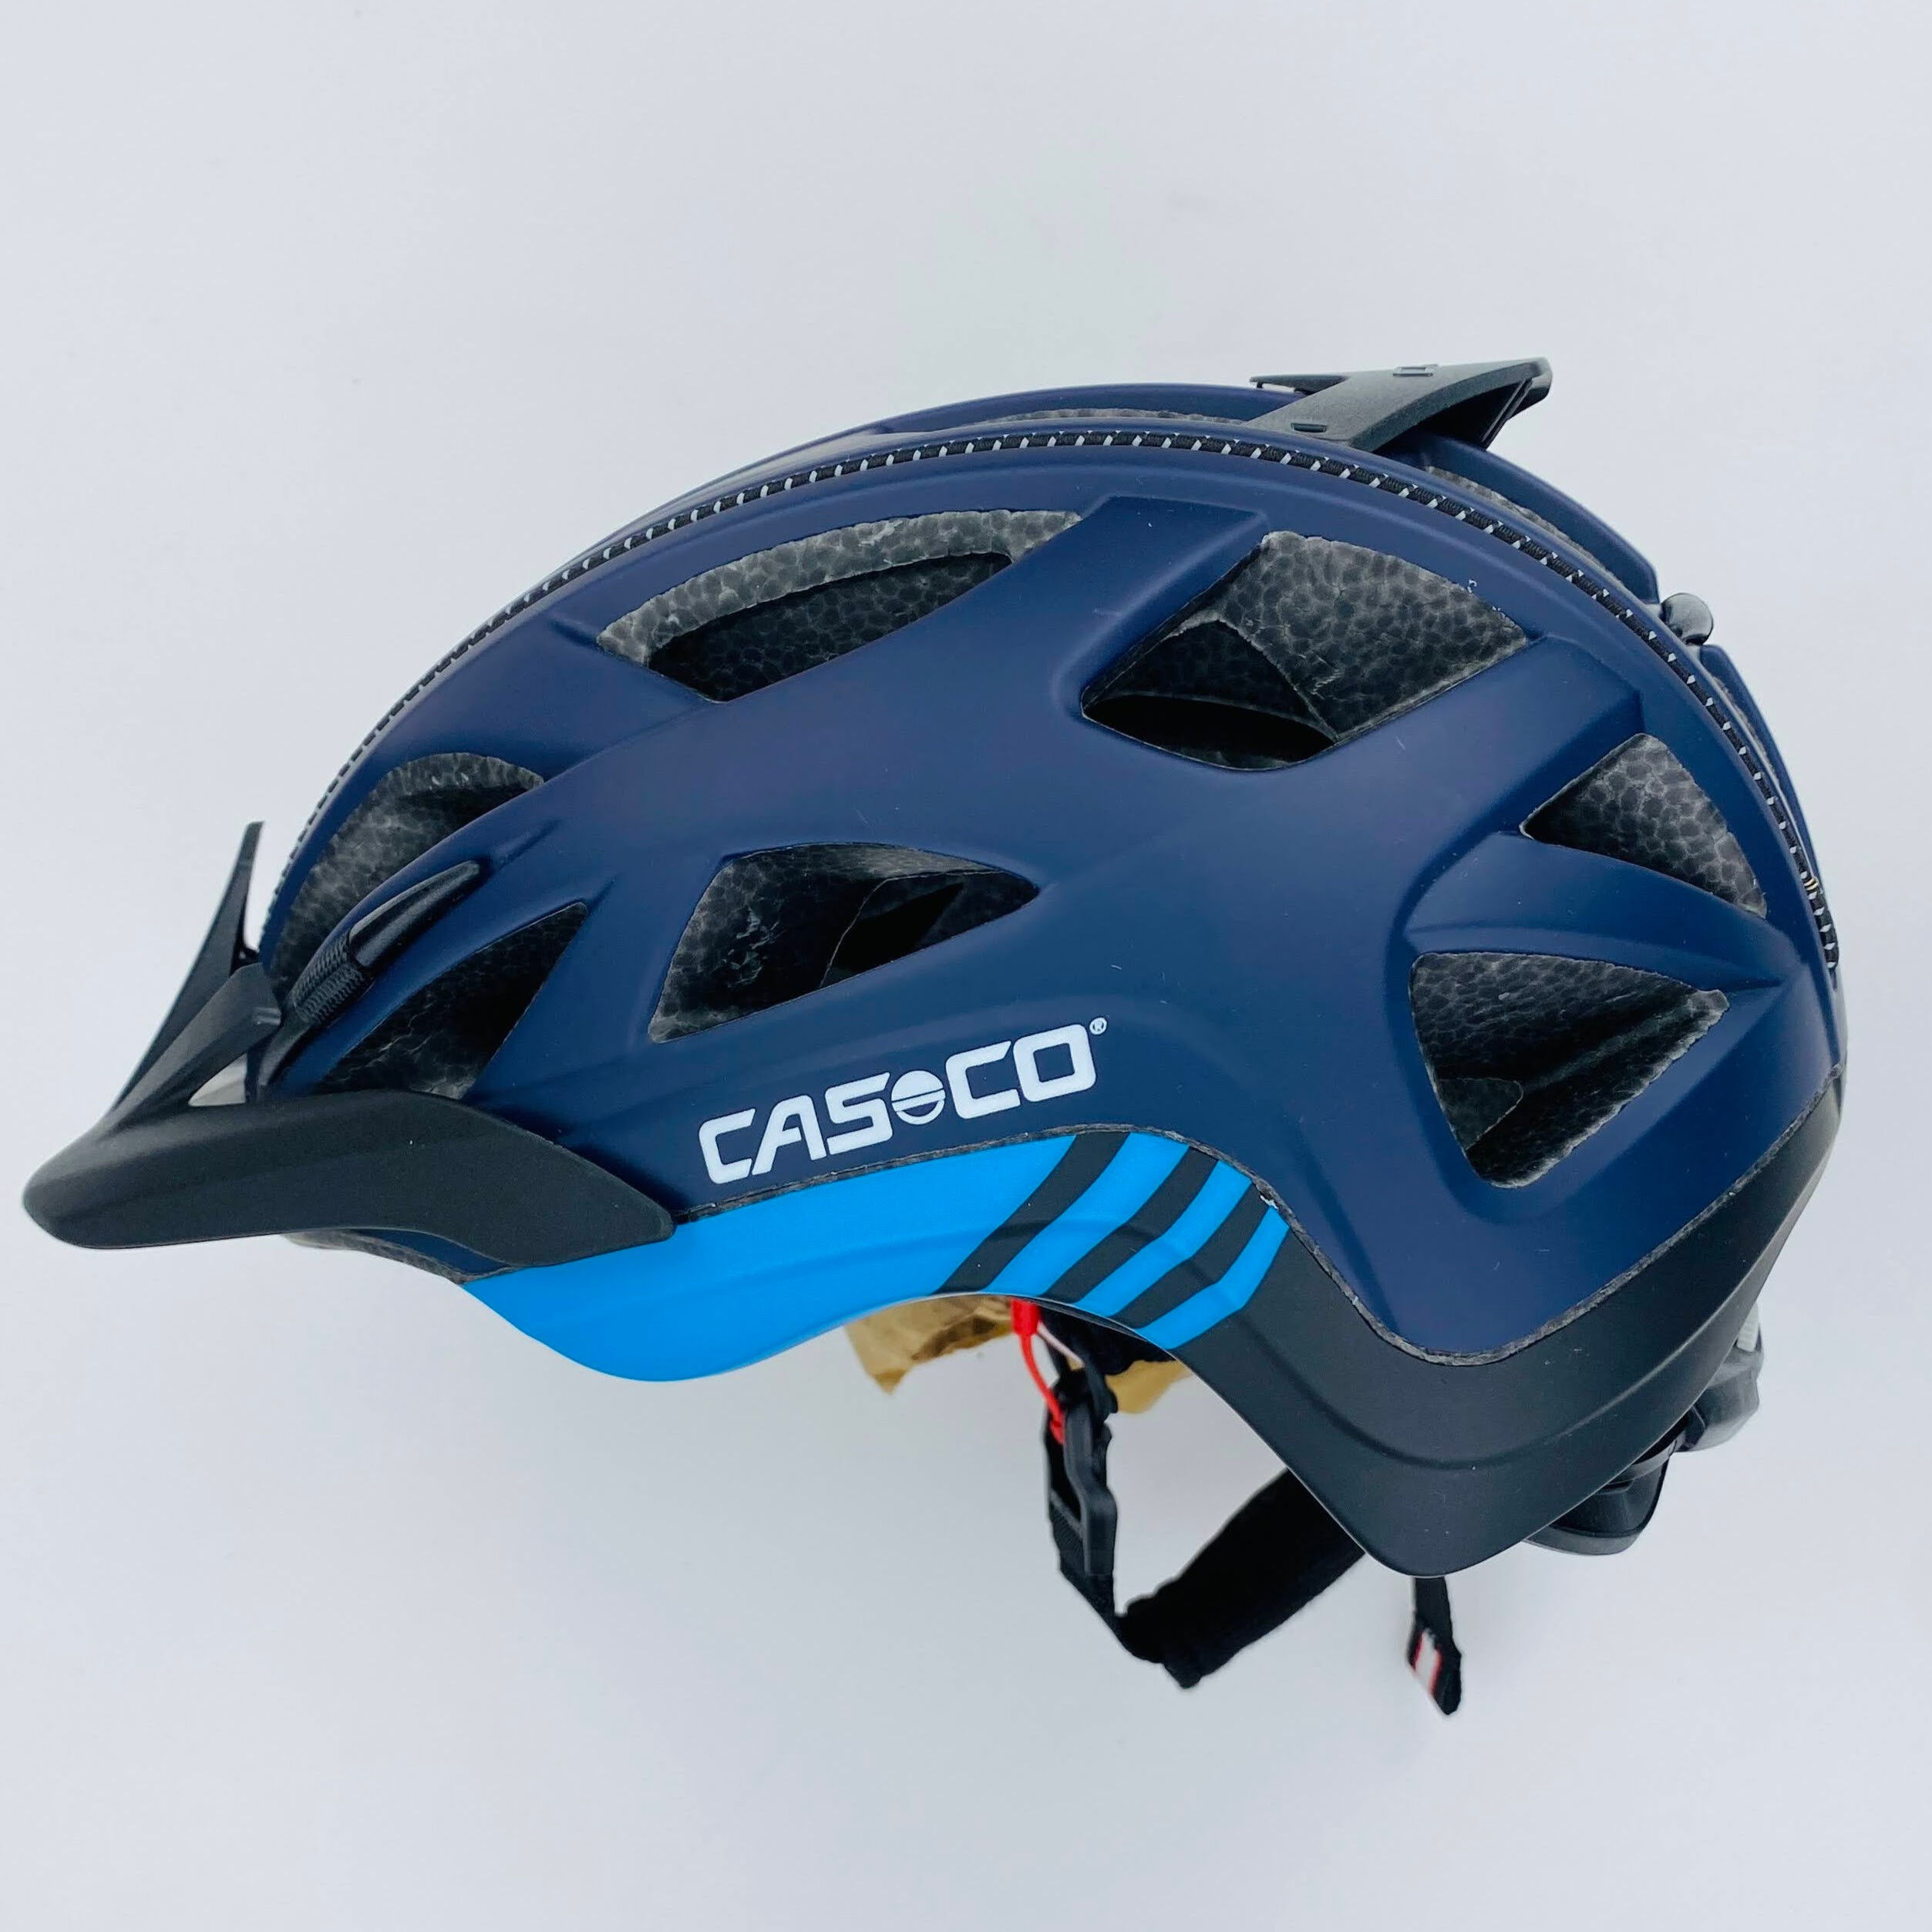 Casco Activ 2 - Pre-owned Cykelhjelm - Blå olie - 52-56 cm | Hardloop